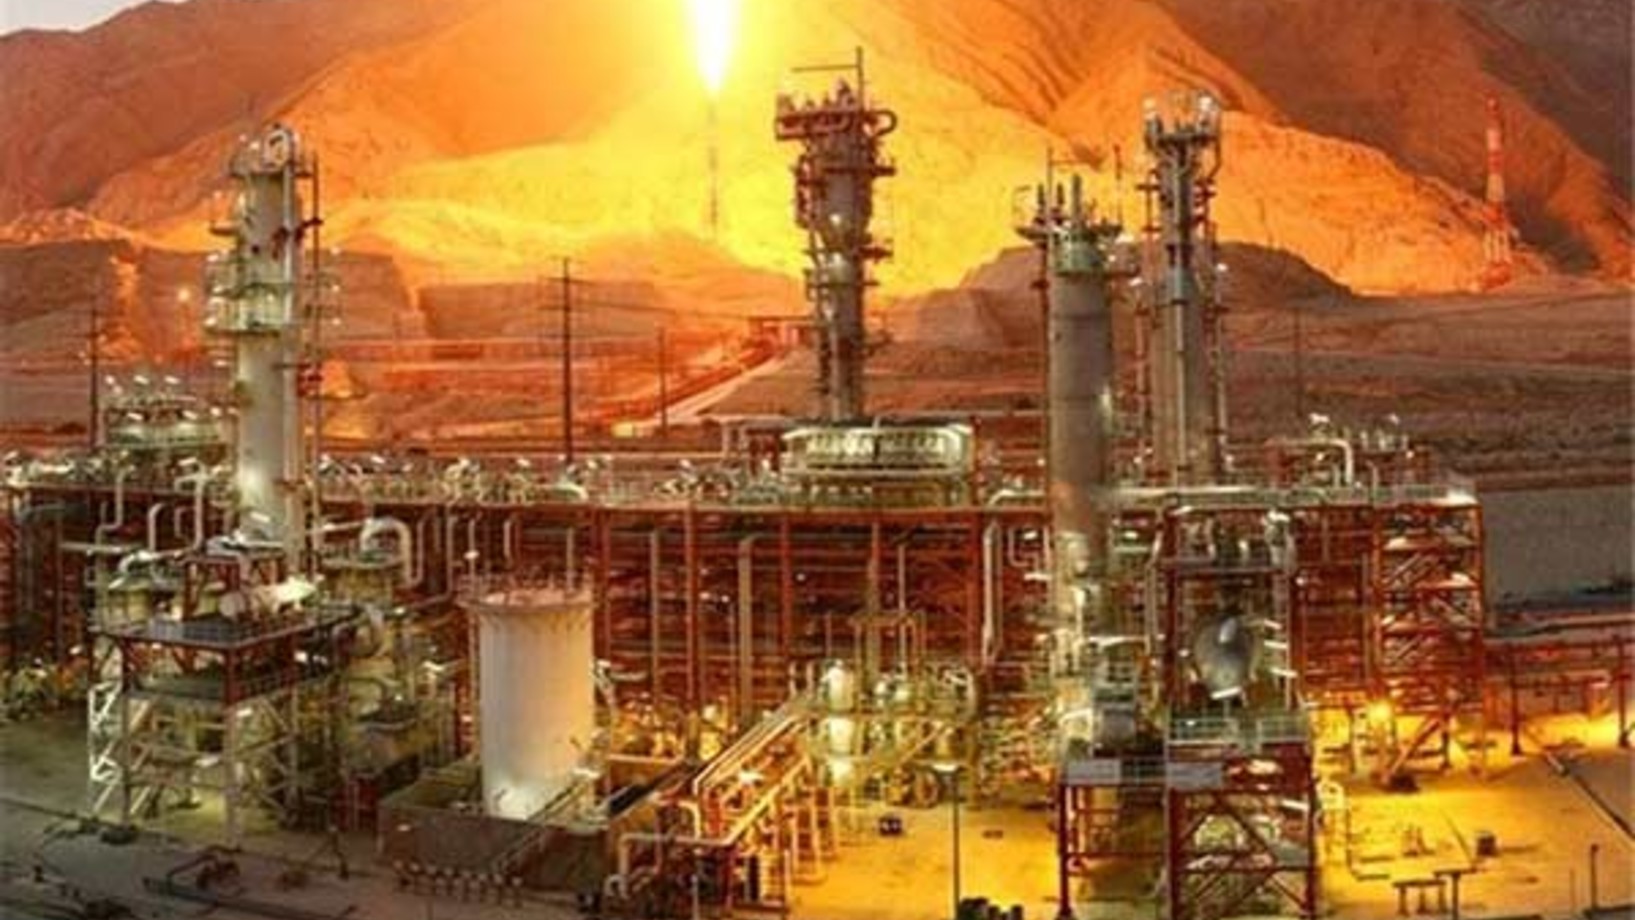 Öl- und Gasförderung im Ölffeld Süd-Pars, im Süden des Iran - eines der Projekte der Organisation „Khatam El-Anbia“
